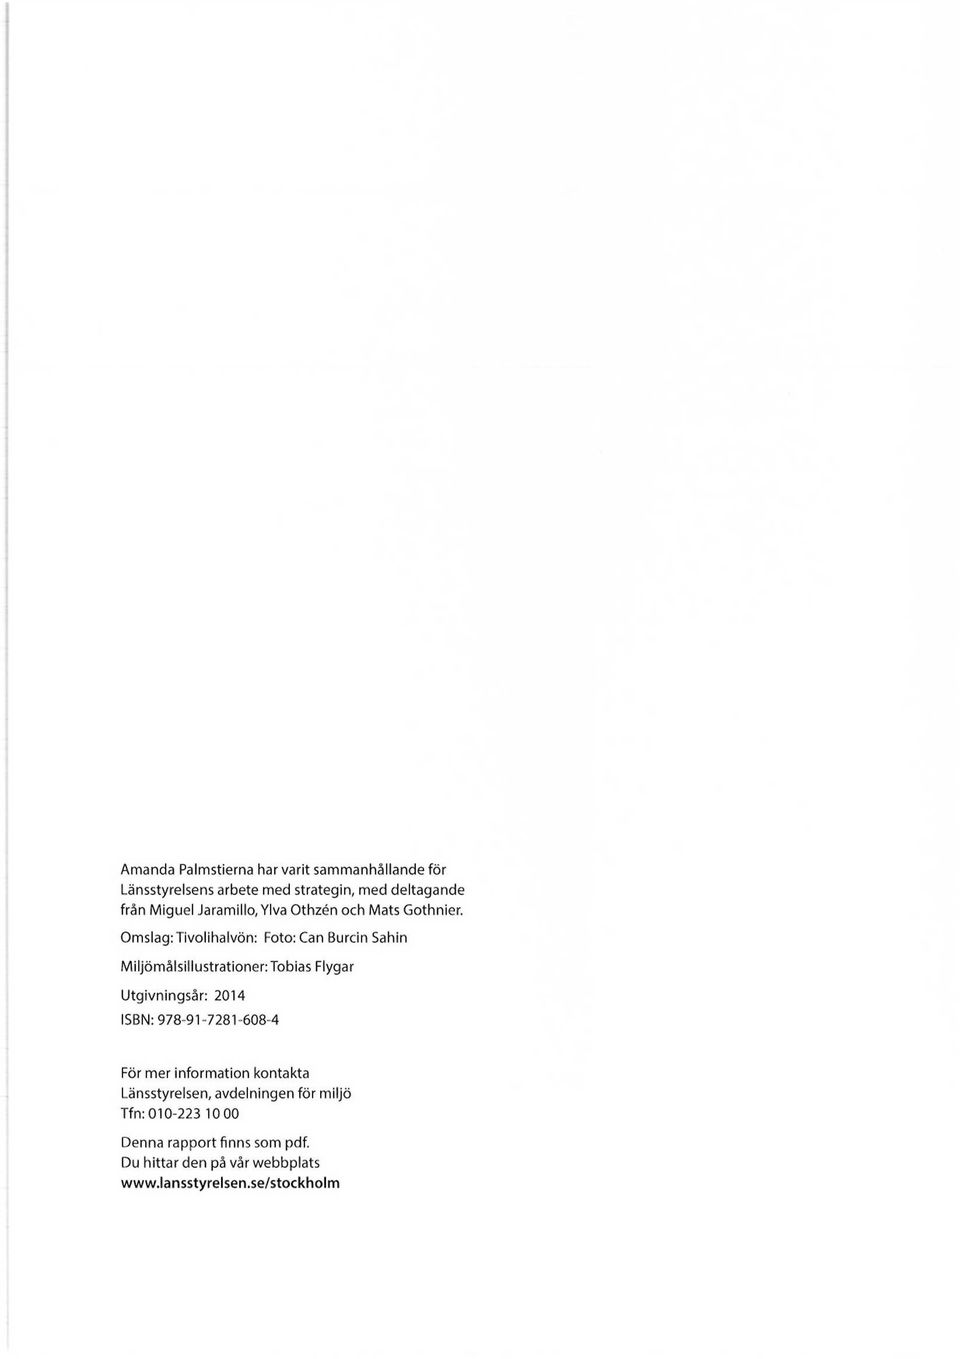 Omslag: Tivolihalvön: Foto: Can Burcin Sahin Miljömålsillustrationer:Tobias Flygar Utgivningsår: 2014 ISBN: